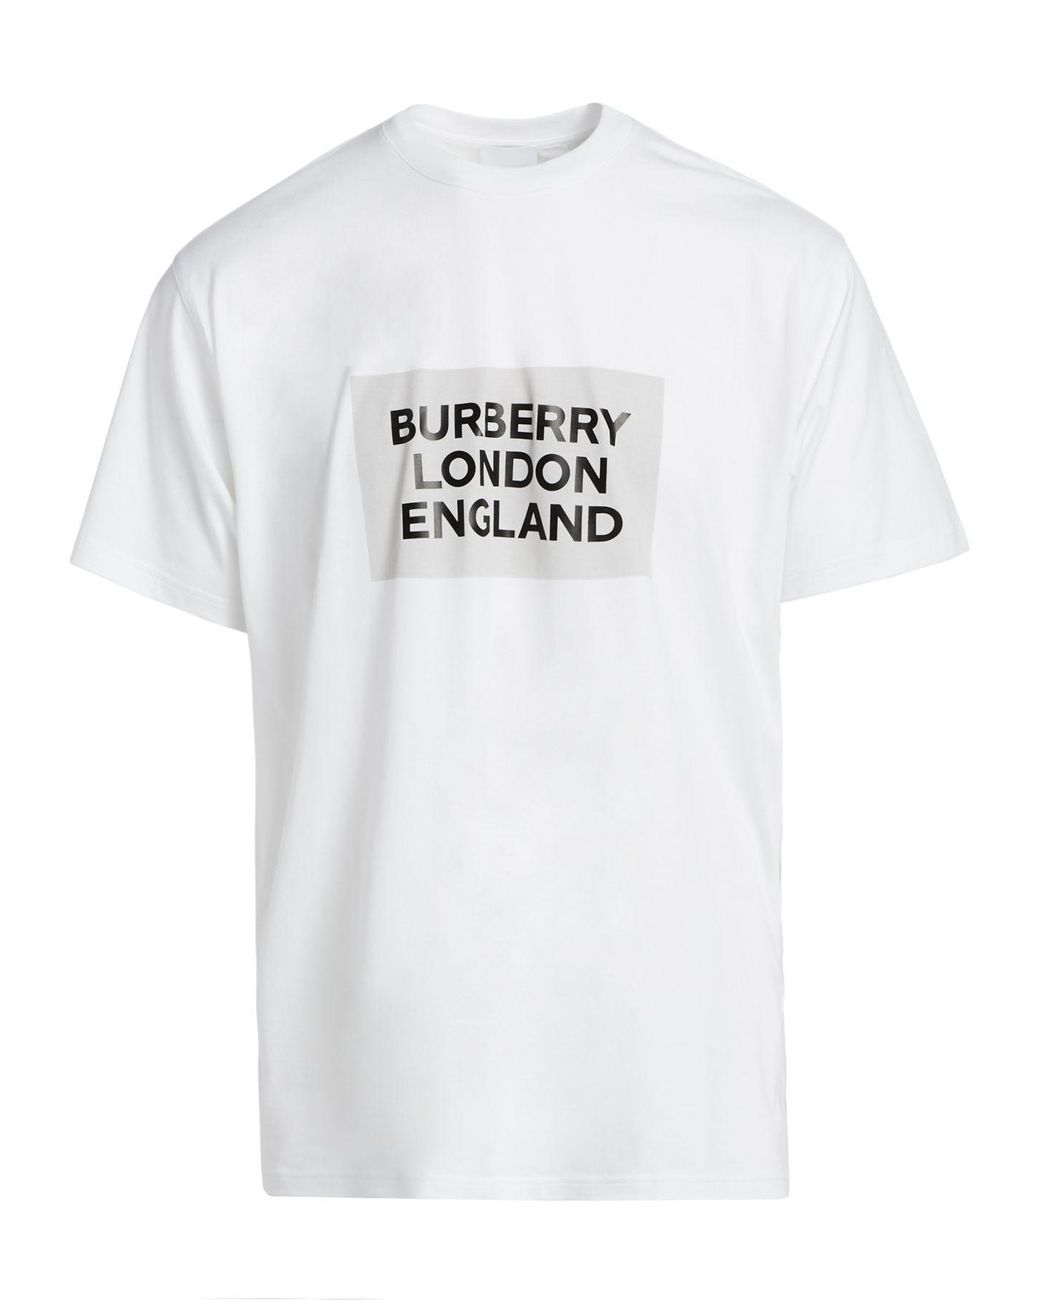 ていないた BURBERRY LONDON ENGLAND いたしまし